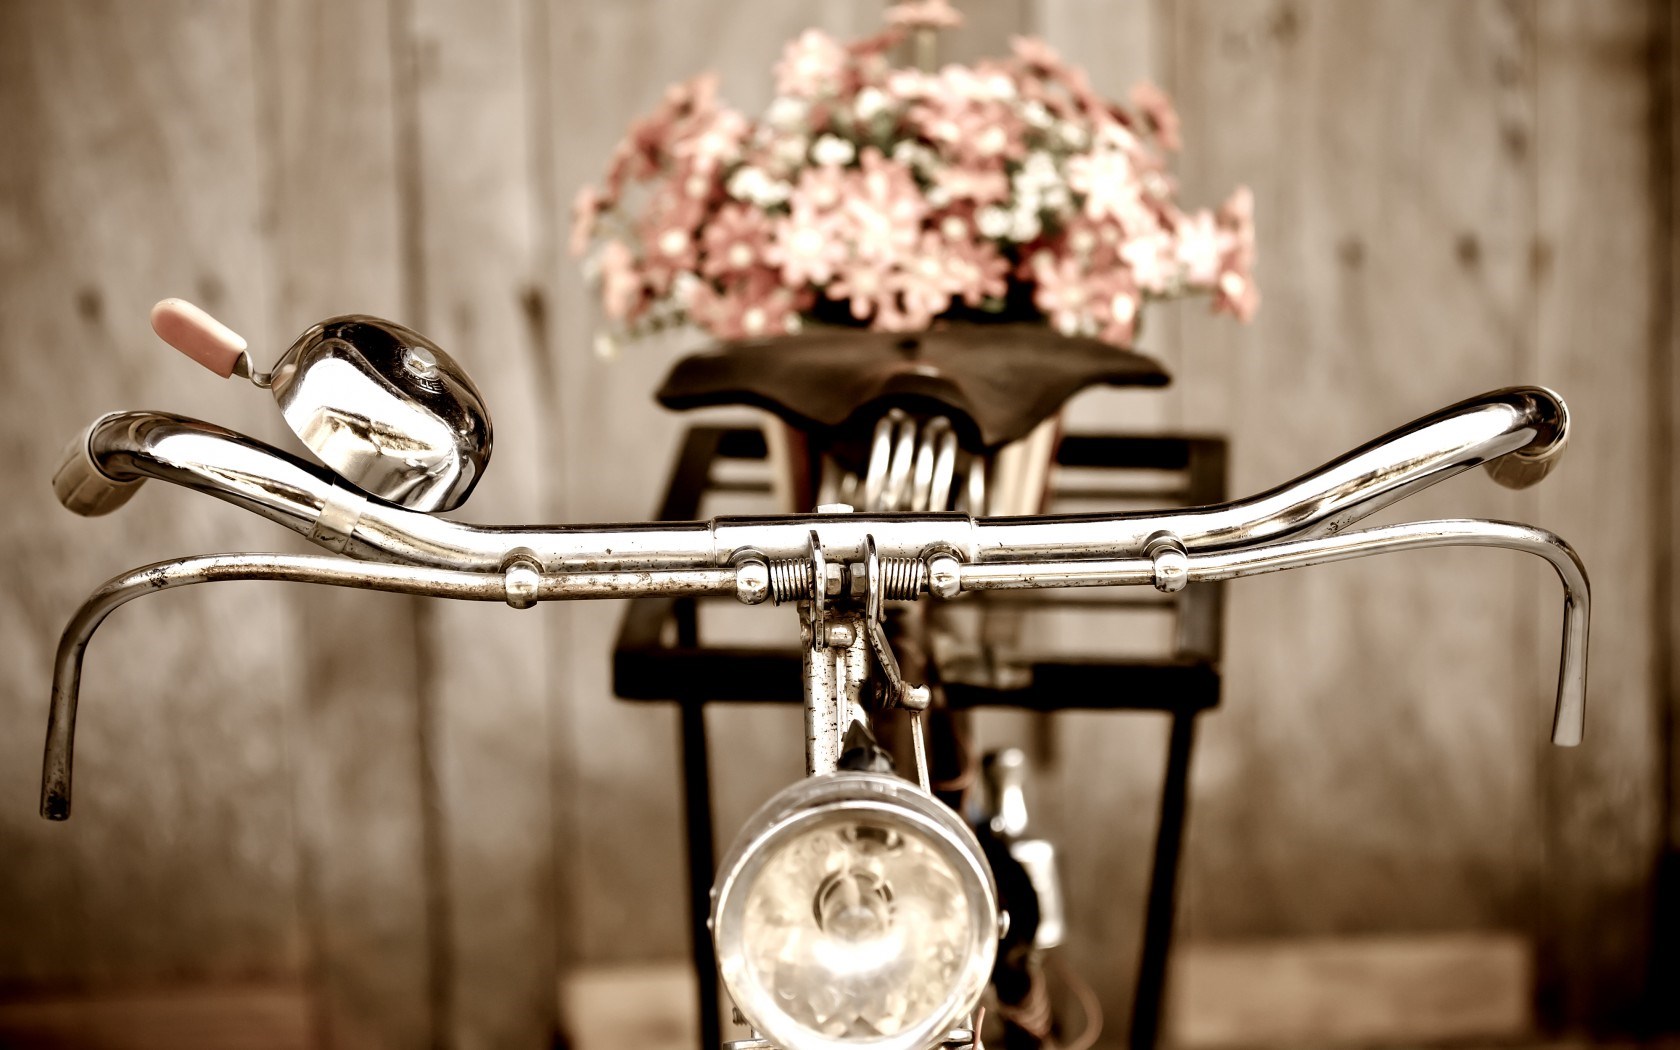 Desktop Wallpaper Bicycles and Flowers - WallpaperSafari